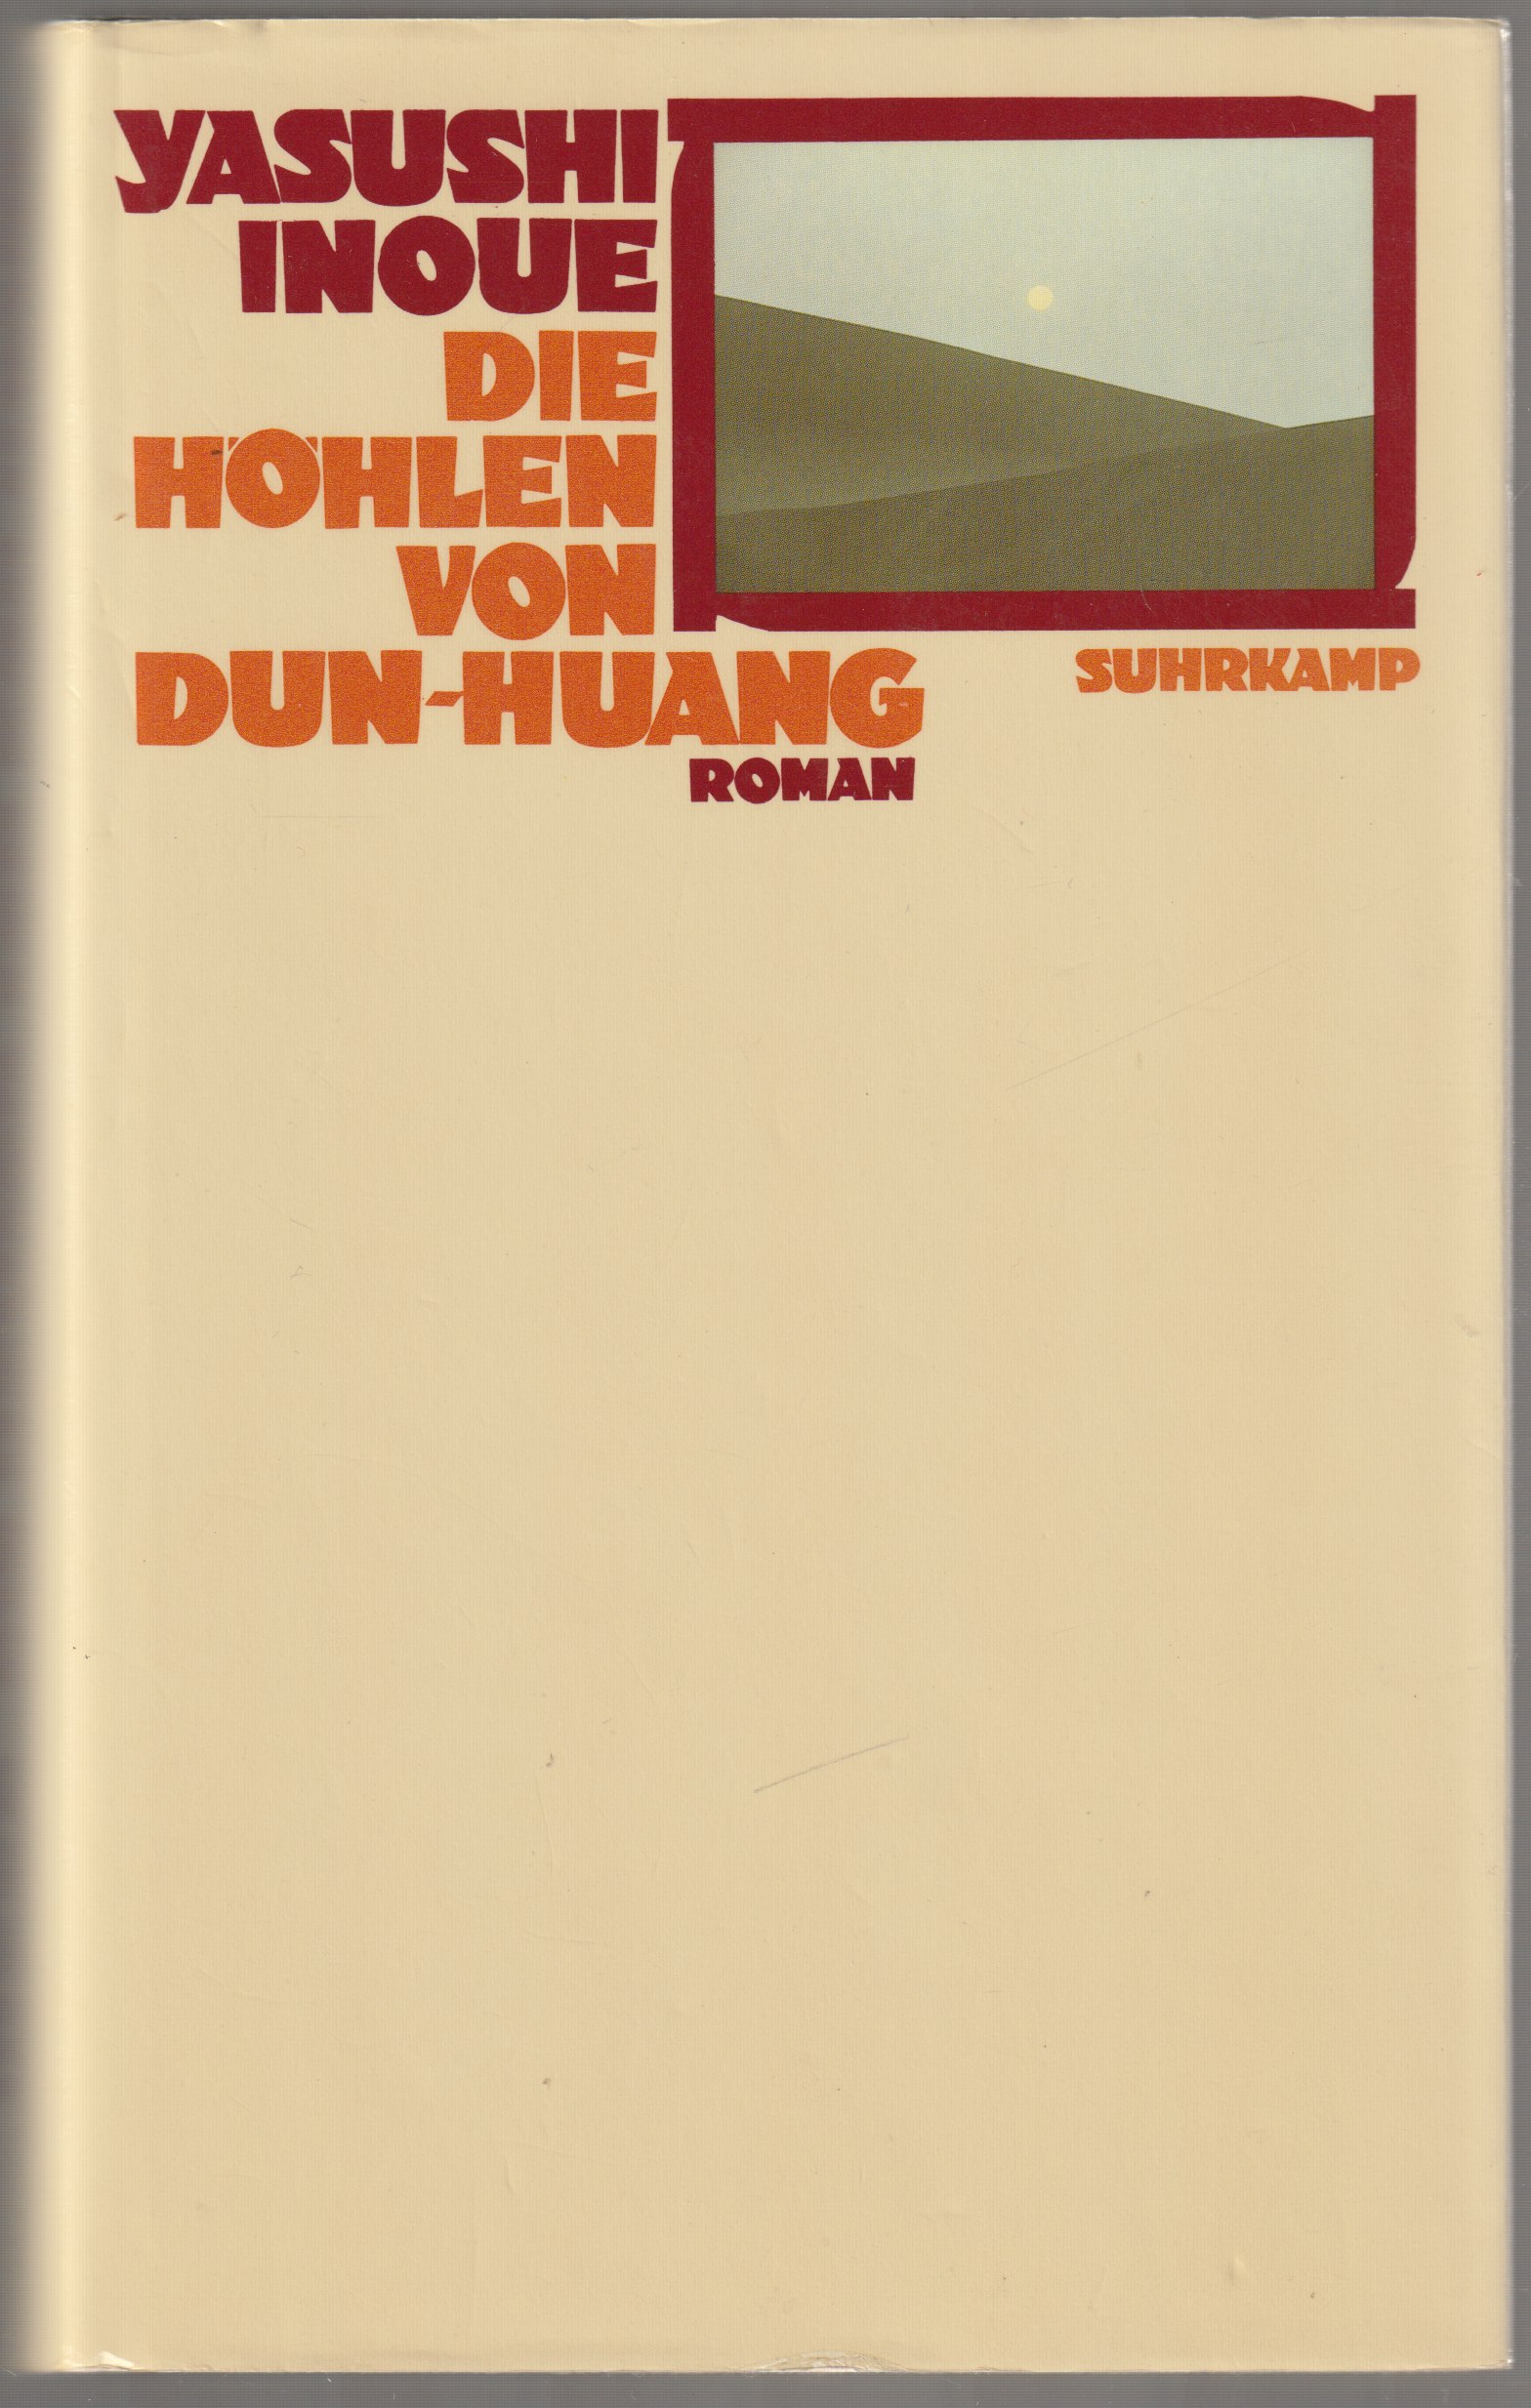 Die Hohlen von Dun-Huang : Roman.